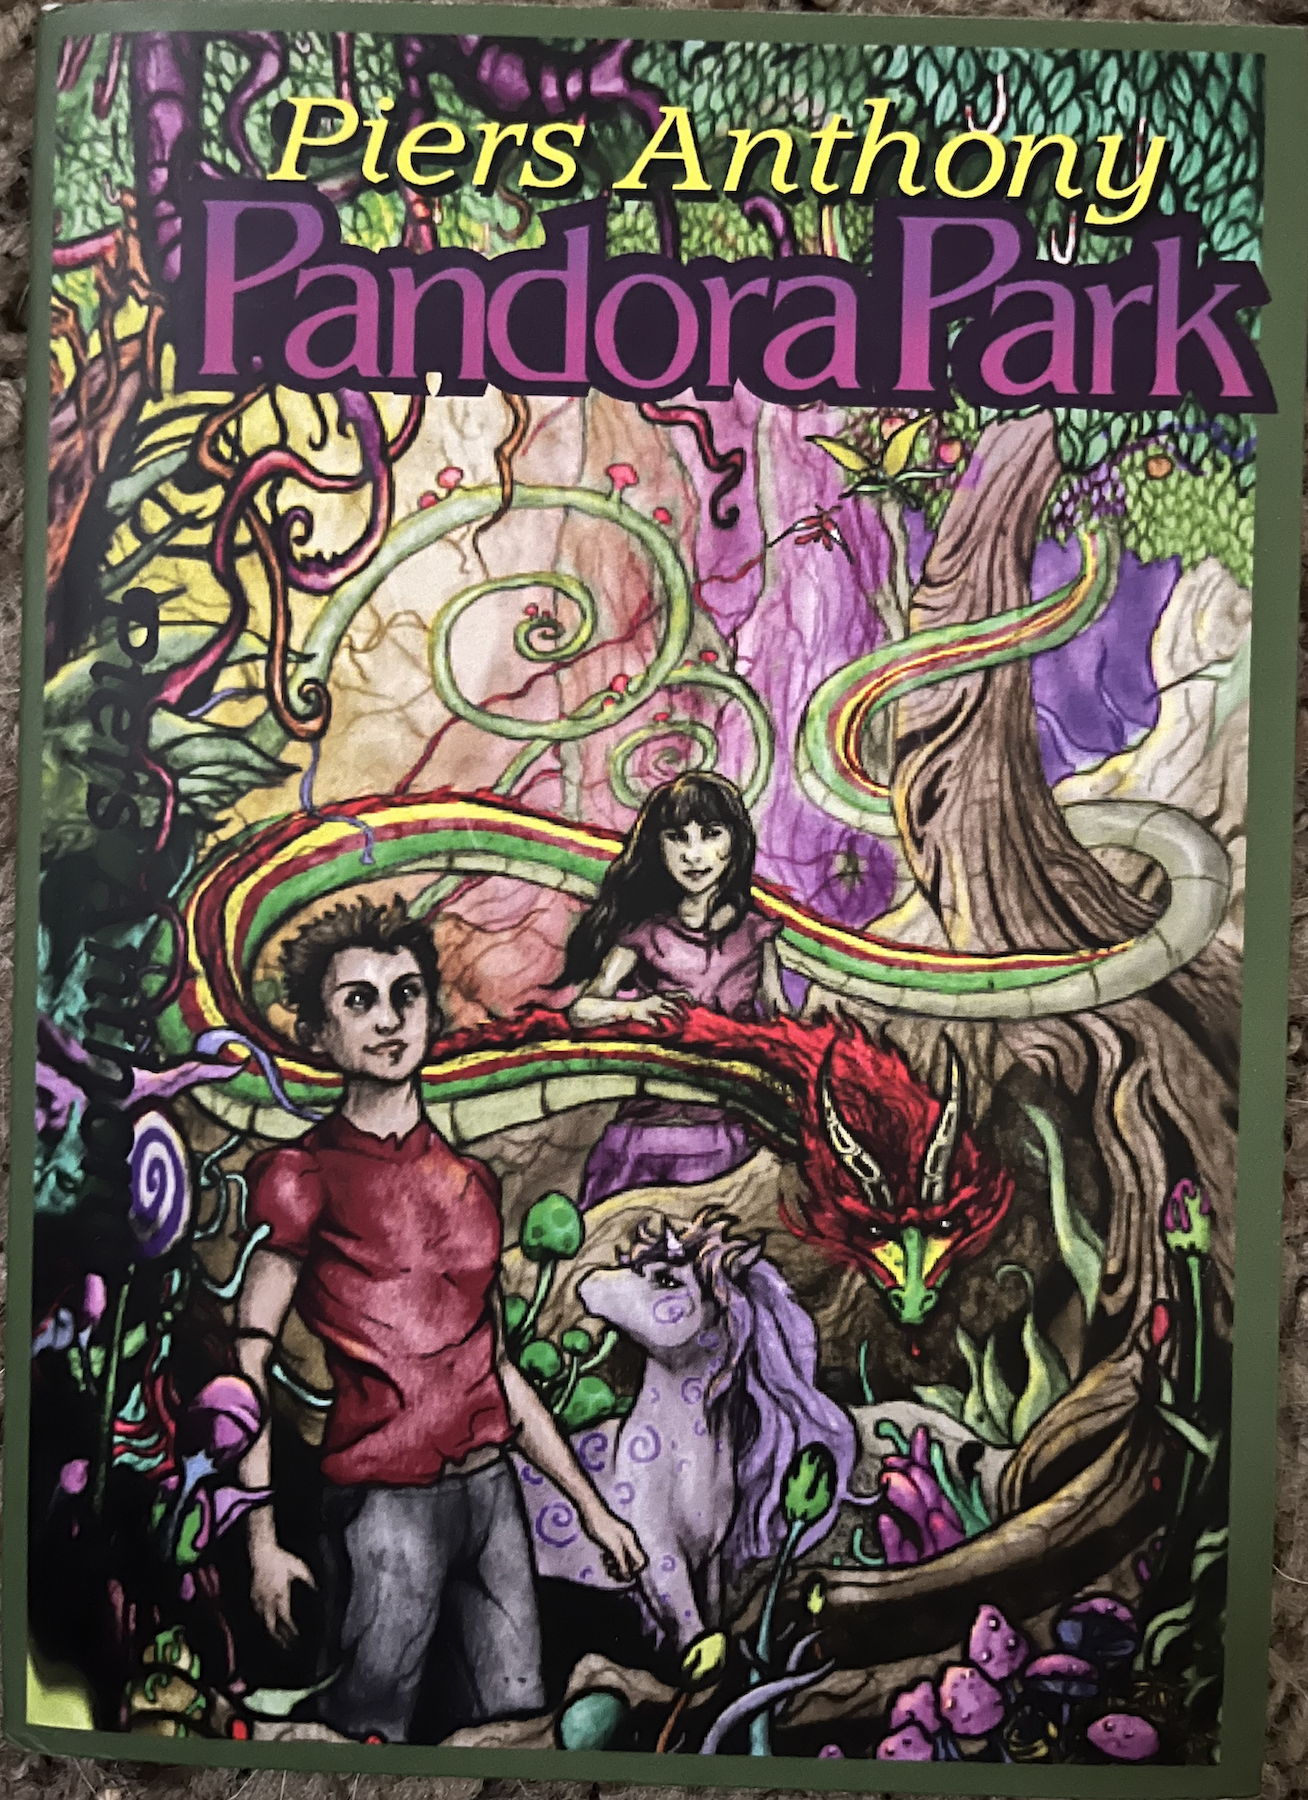 Pandora Park paperback cover